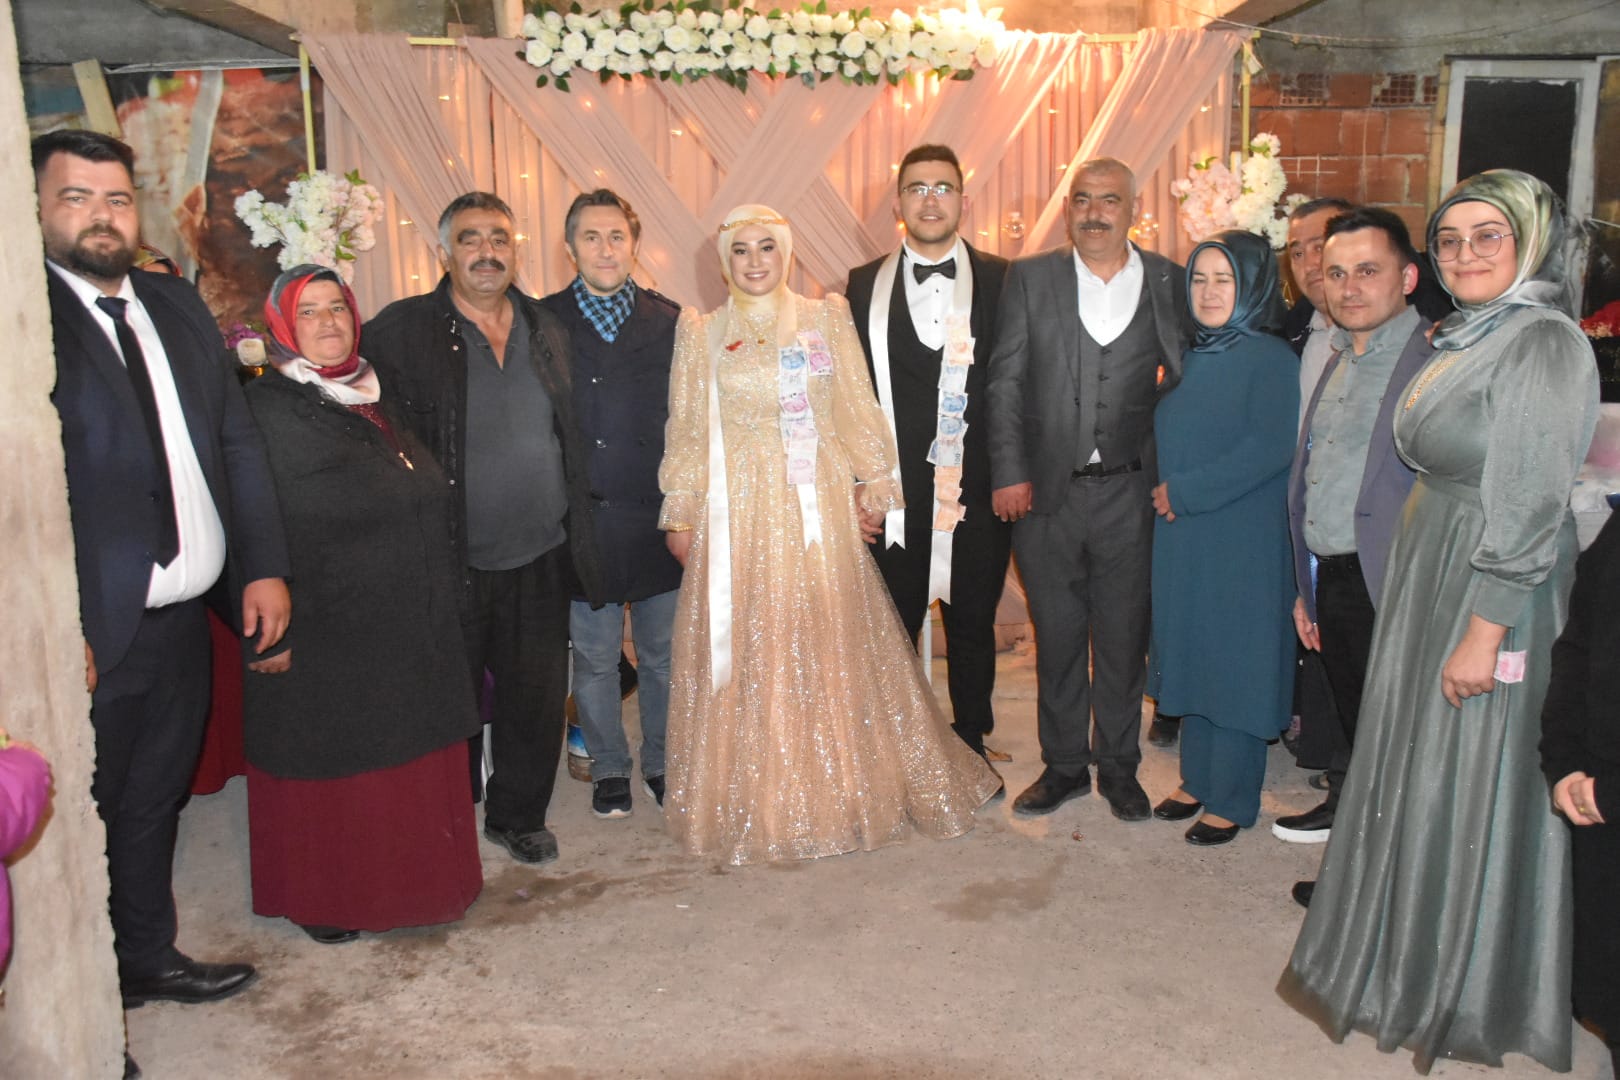 Belediye Başkanımız Hüseyin Kıyma, Dilek Akgün ve Bahadır Uzun çiftinin nişan merasimine katılarak evlilik yolundaki bu mutlu anlarına ortak oldu.